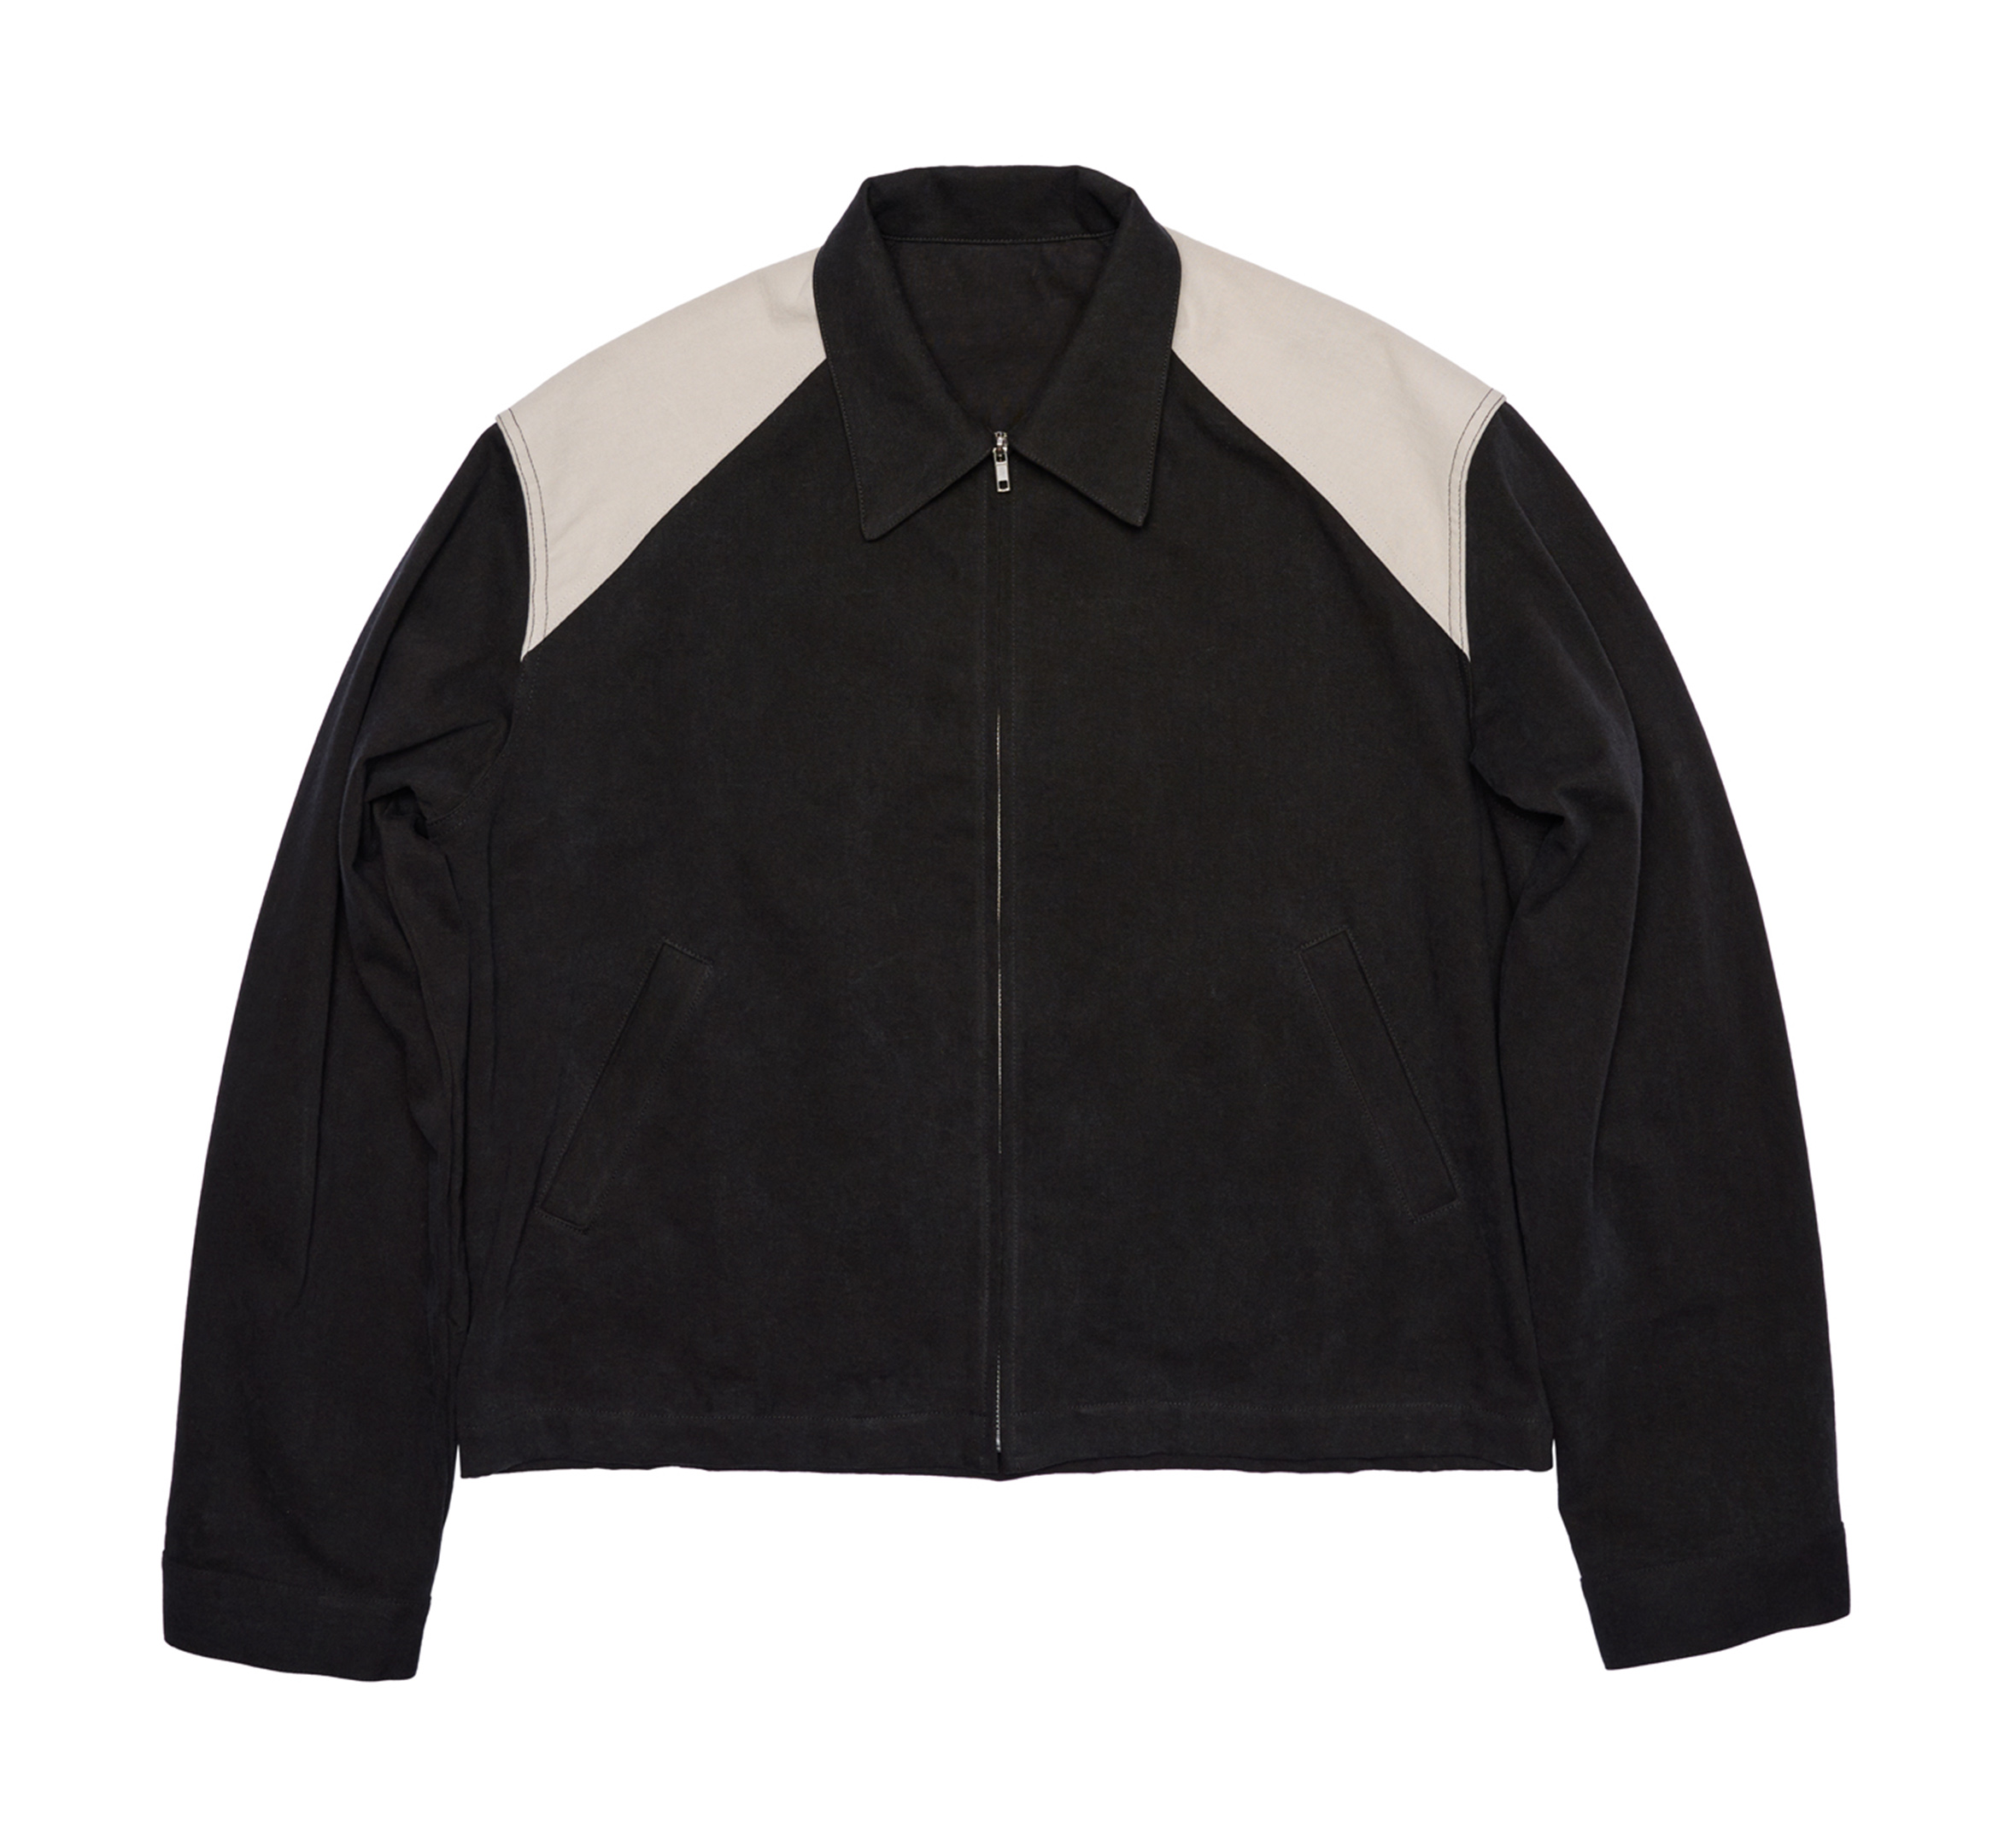 MKE Nylon Workwear Jacket | Harley-Davidson USA